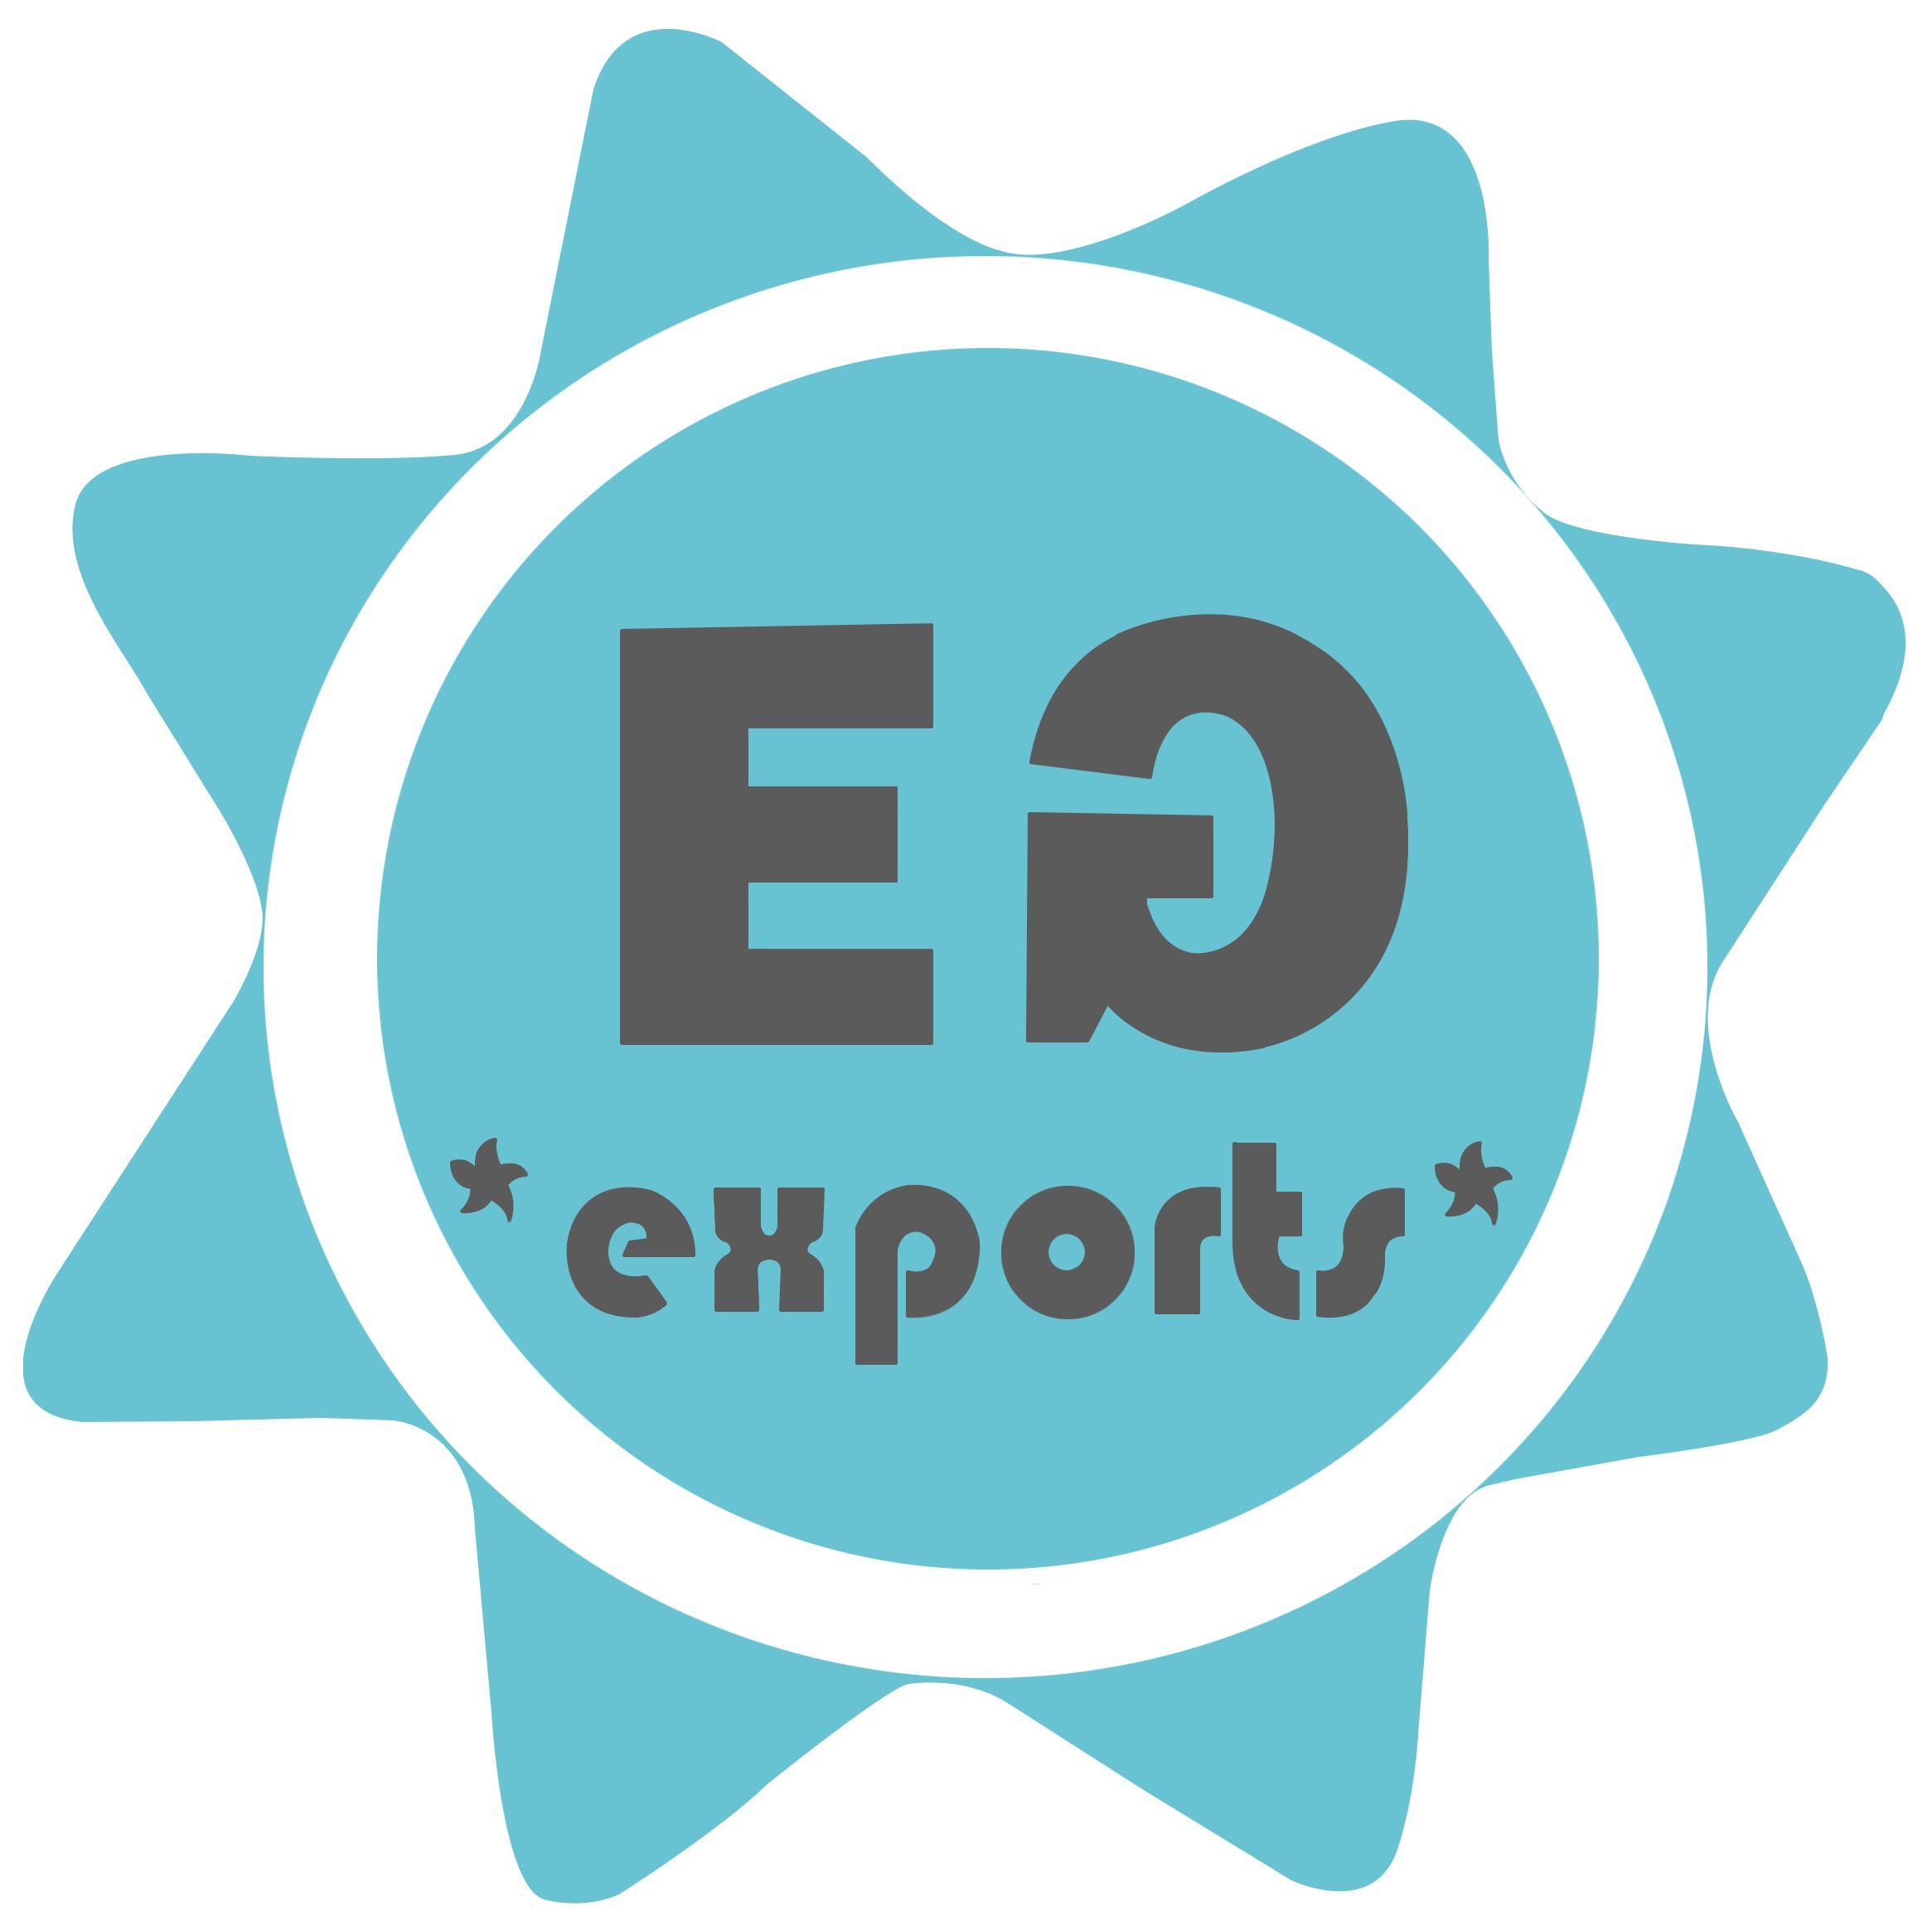 Eden Garden Exports erreicht mit Odoo neue Horizonte